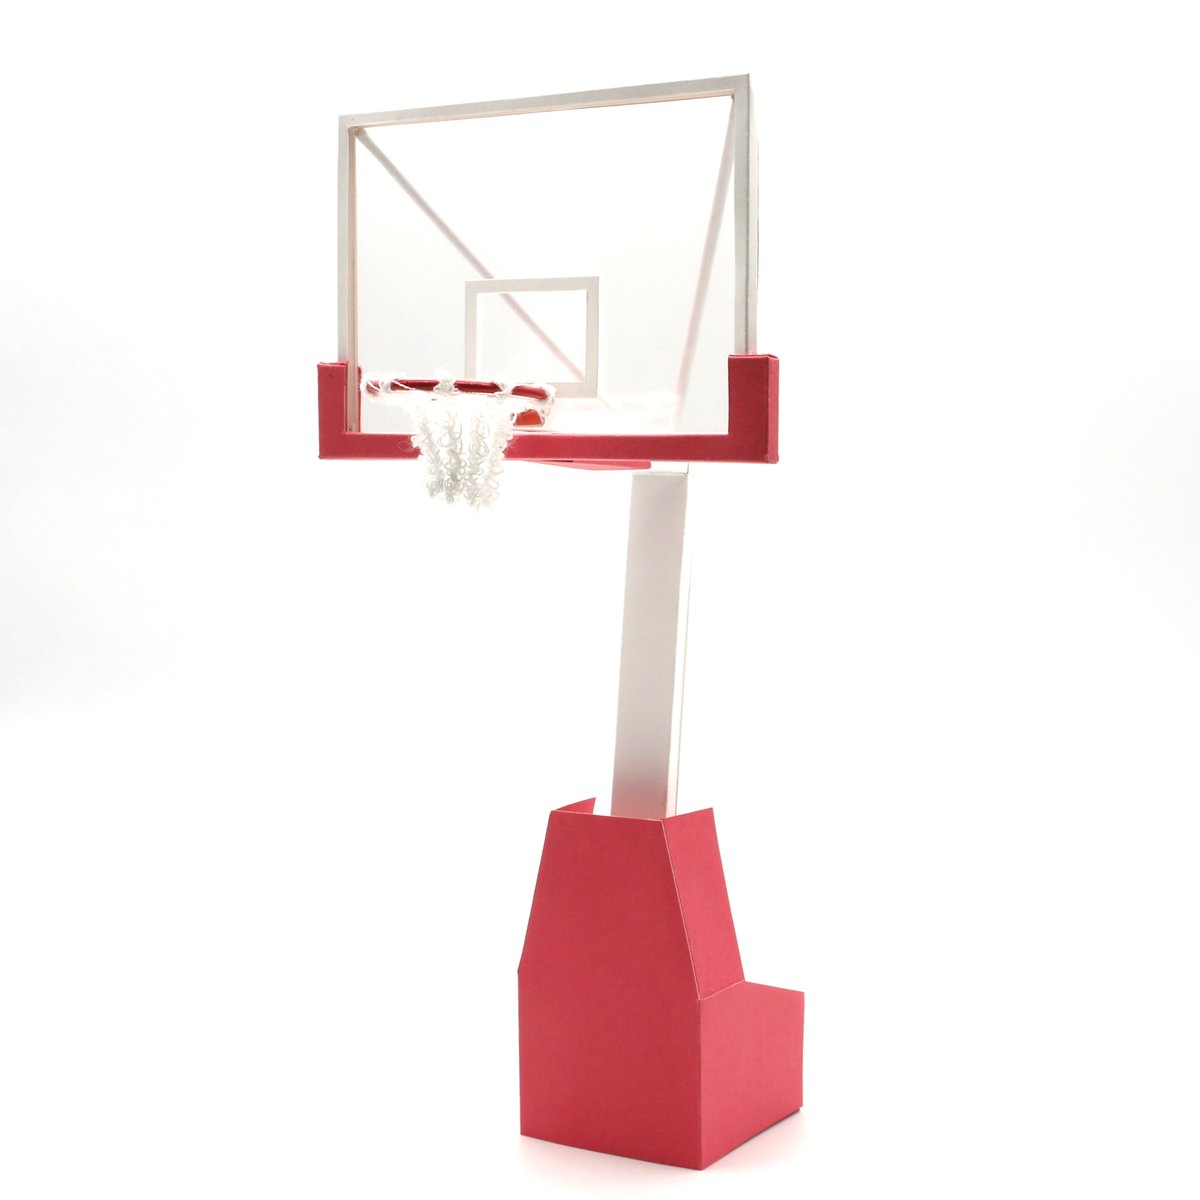 バスケットゴール のイラスト マンガ コスプレ モデル作品 6 件 Twoucan